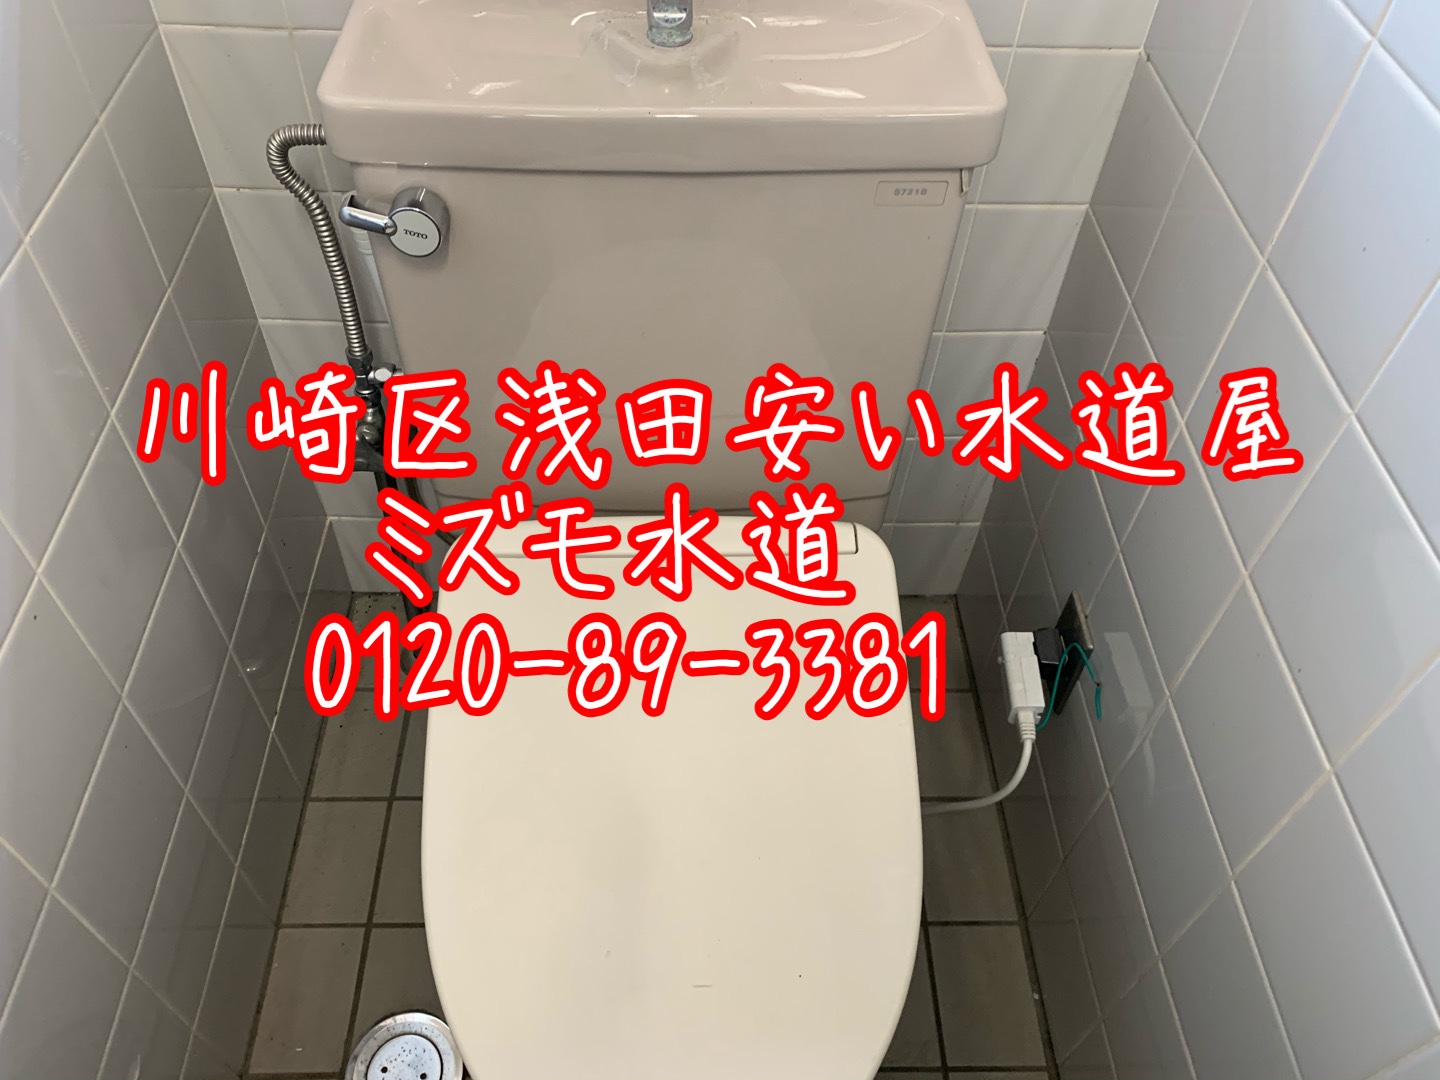 川崎区浅田トイレタンク水漏れ修理